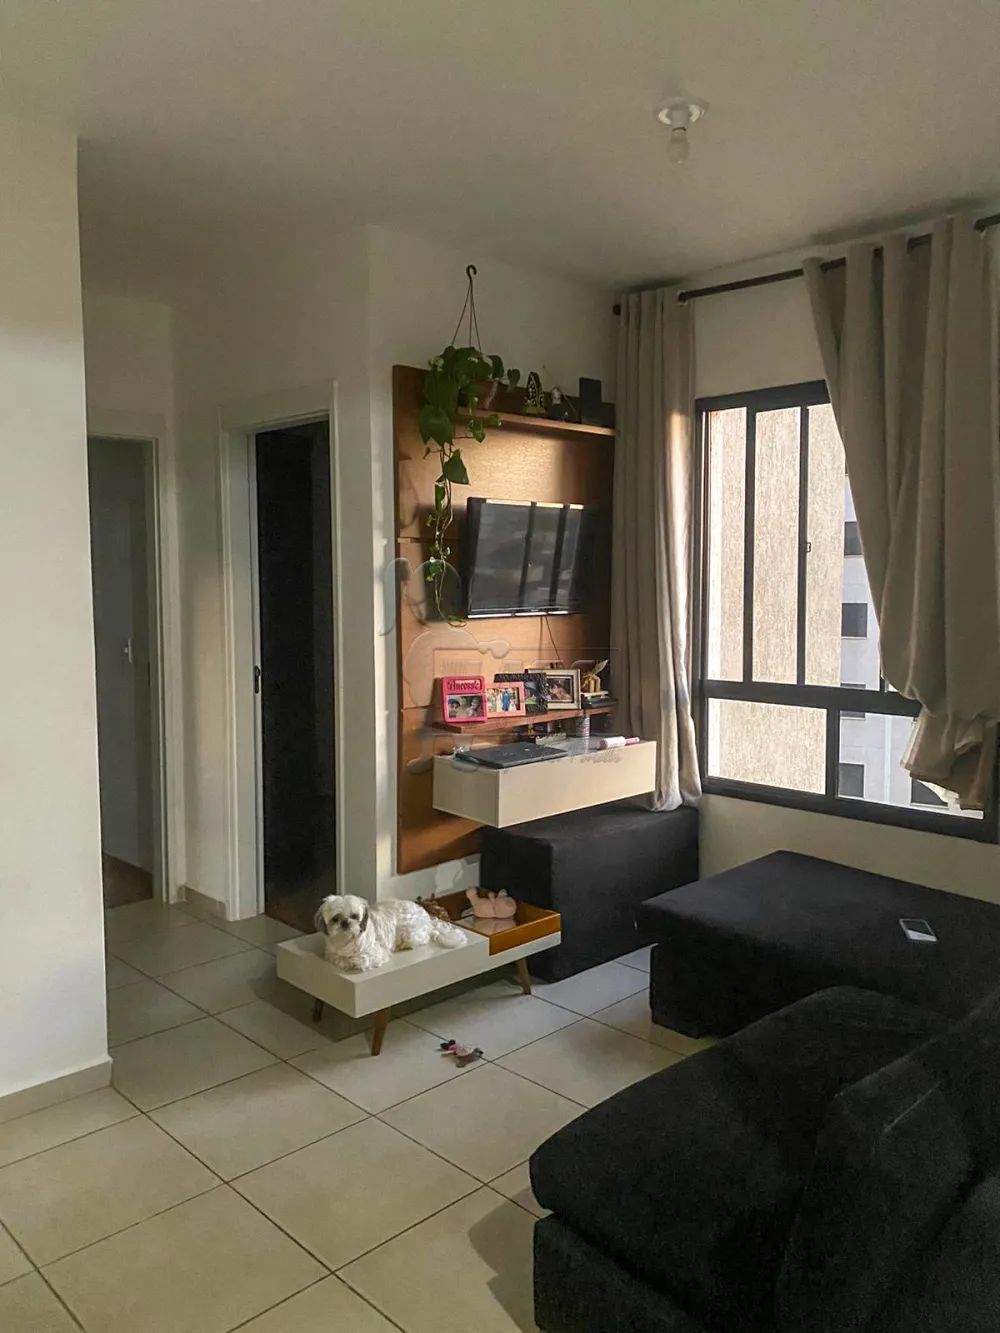 Comprar Apartamento / Padrão em Ribeirão Preto R$ 270.000,00 - Foto 2